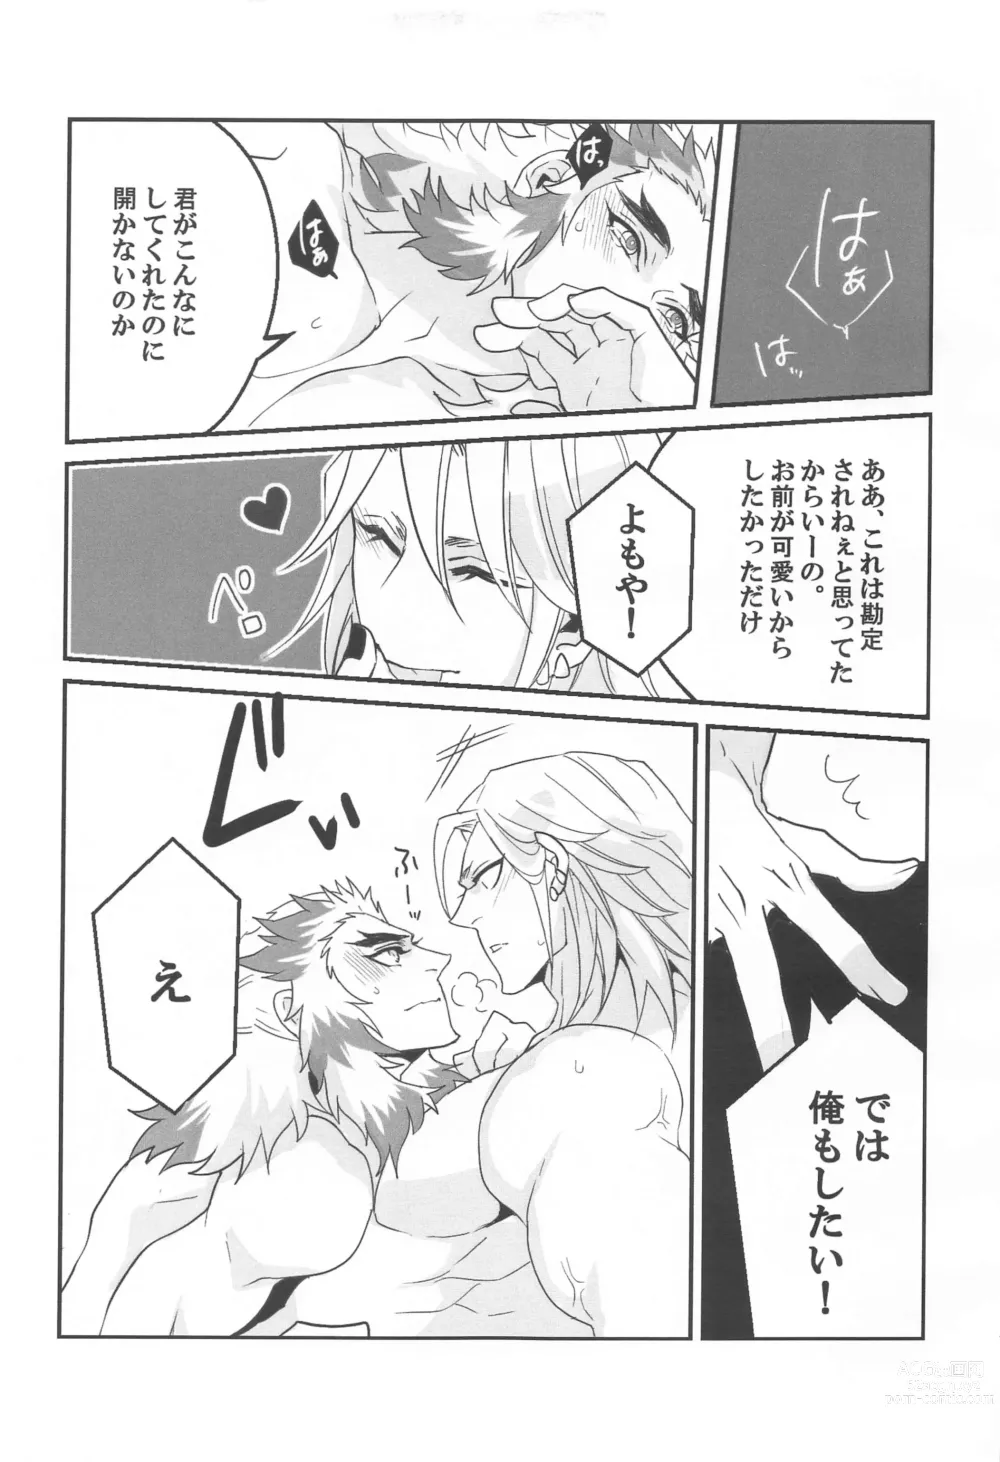 Page 10 of doujinshi ●● Shinai to Derarenai Heya